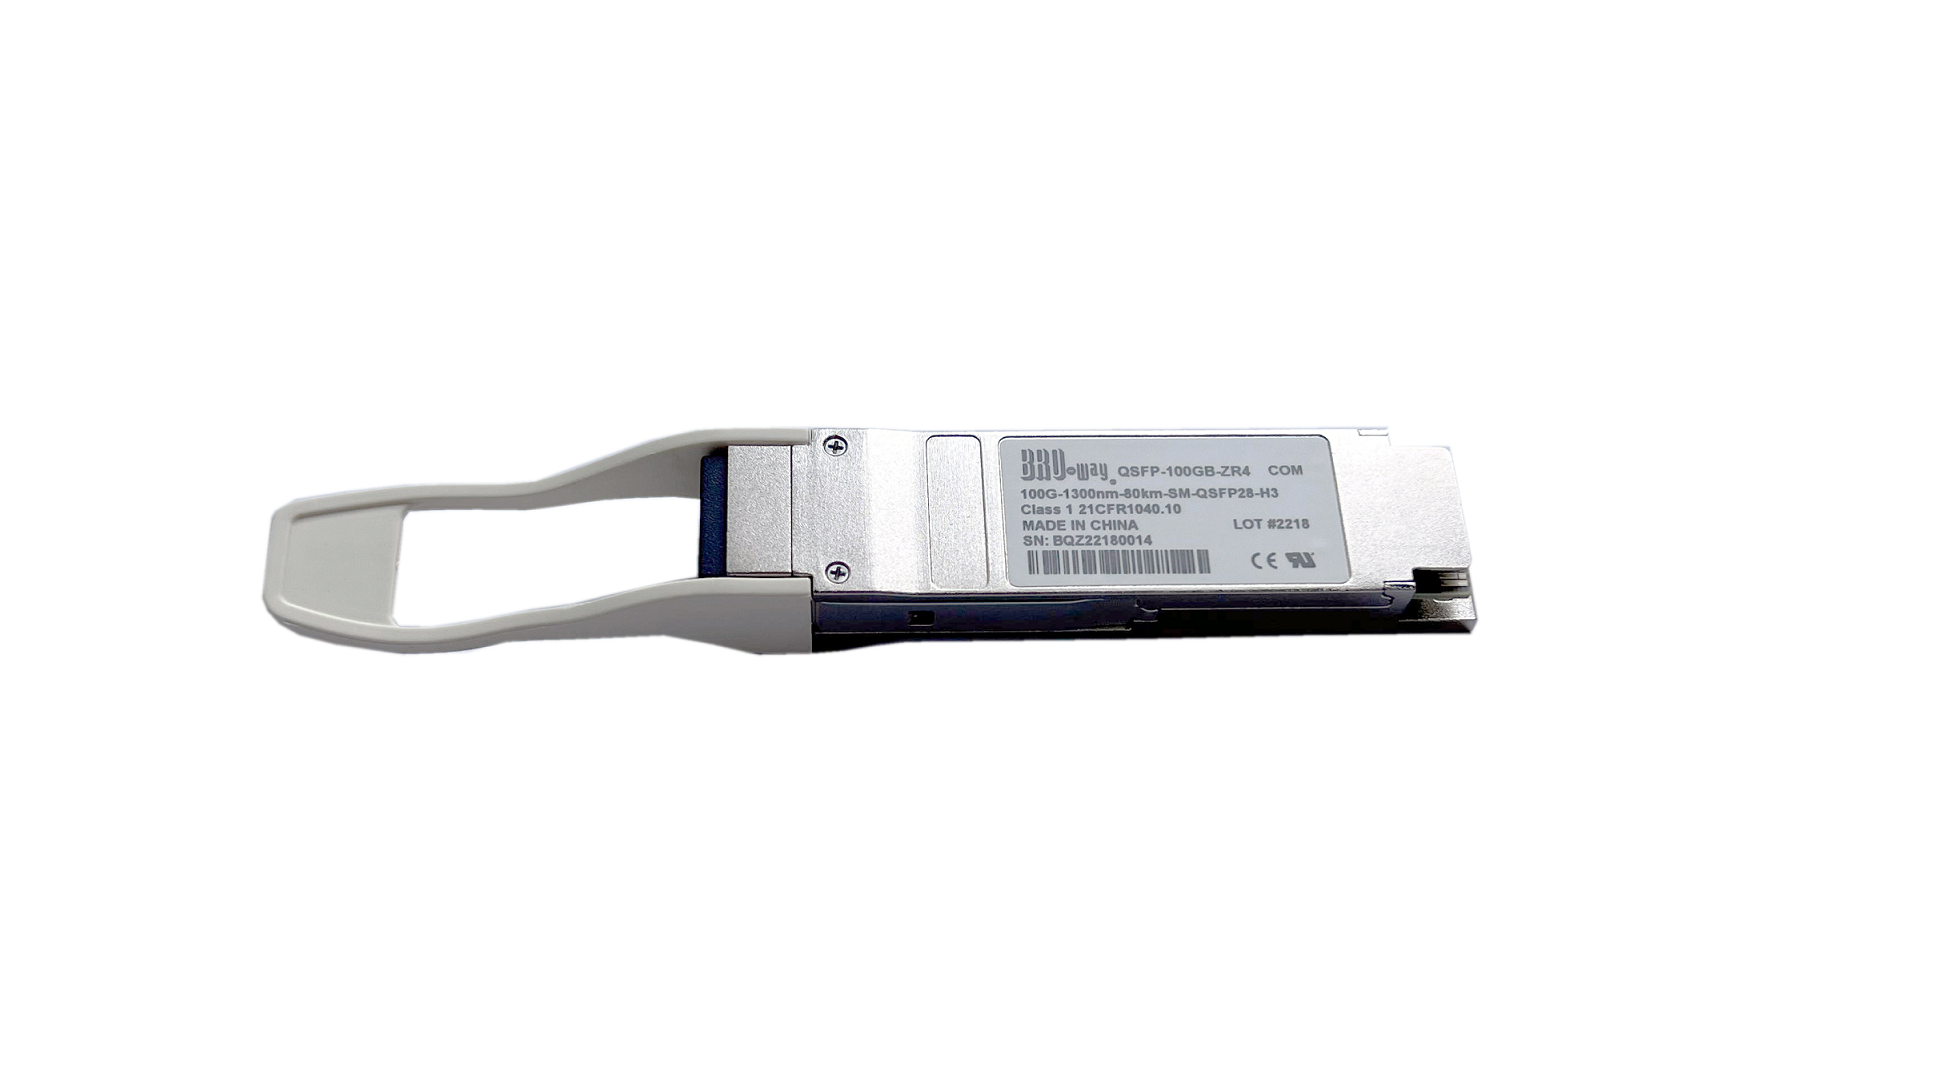 QSFP-100GB-ZR4